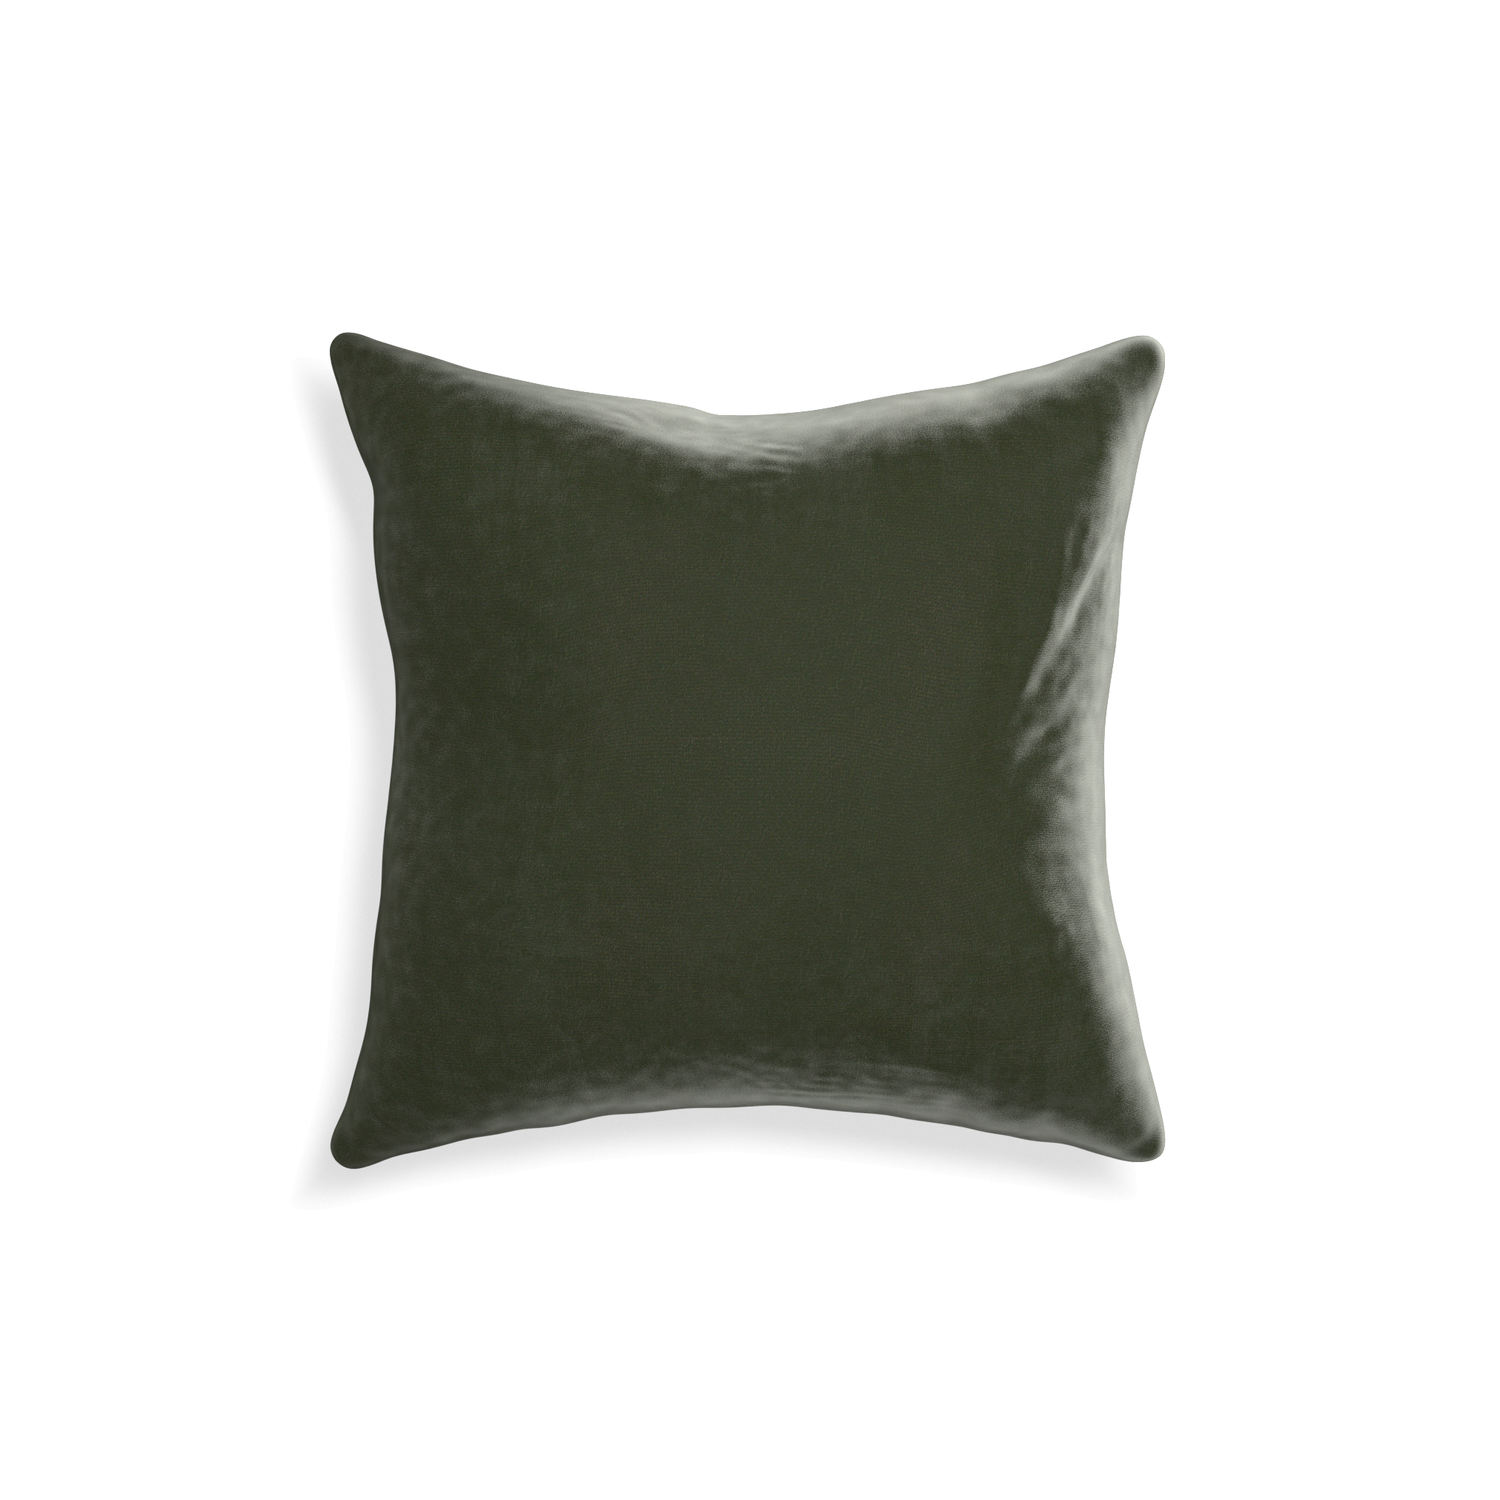 18-square fern velvet custom pillow with none on white background